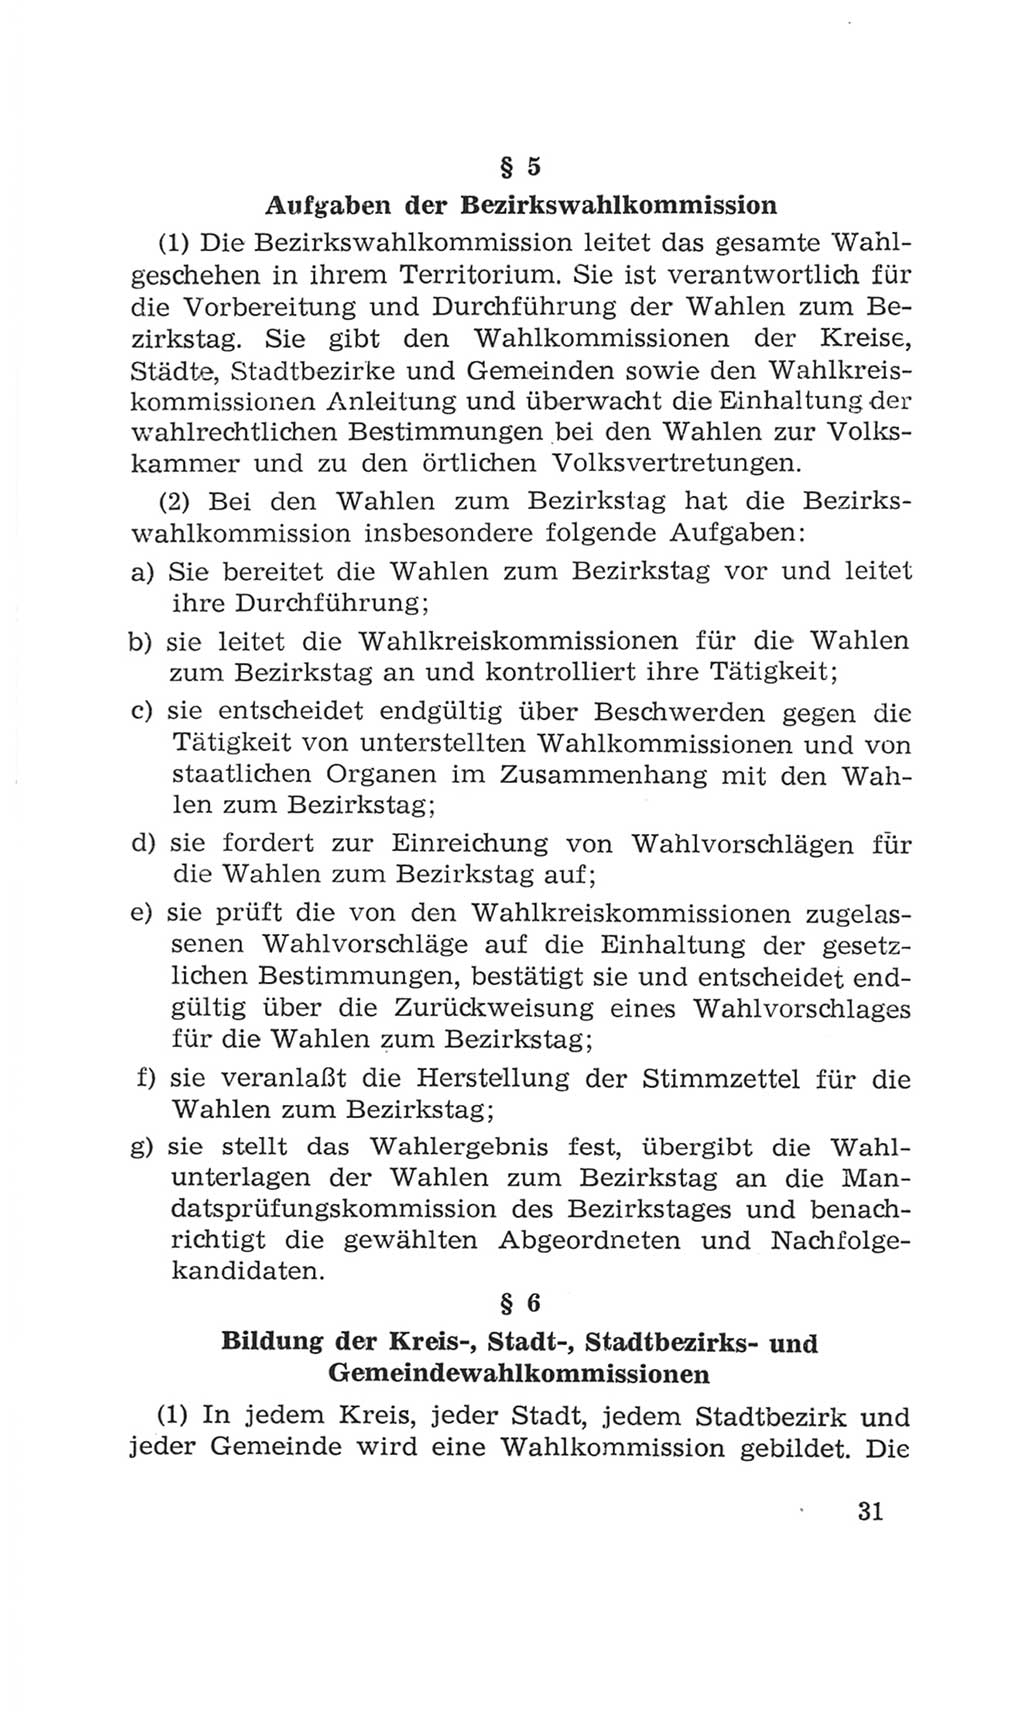 Volkskammer (VK) der Deutschen Demokratischen Republik (DDR), 4. Wahlperiode 1963-1967, Seite 31 (VK. DDR 4. WP. 1963-1967, S. 31)